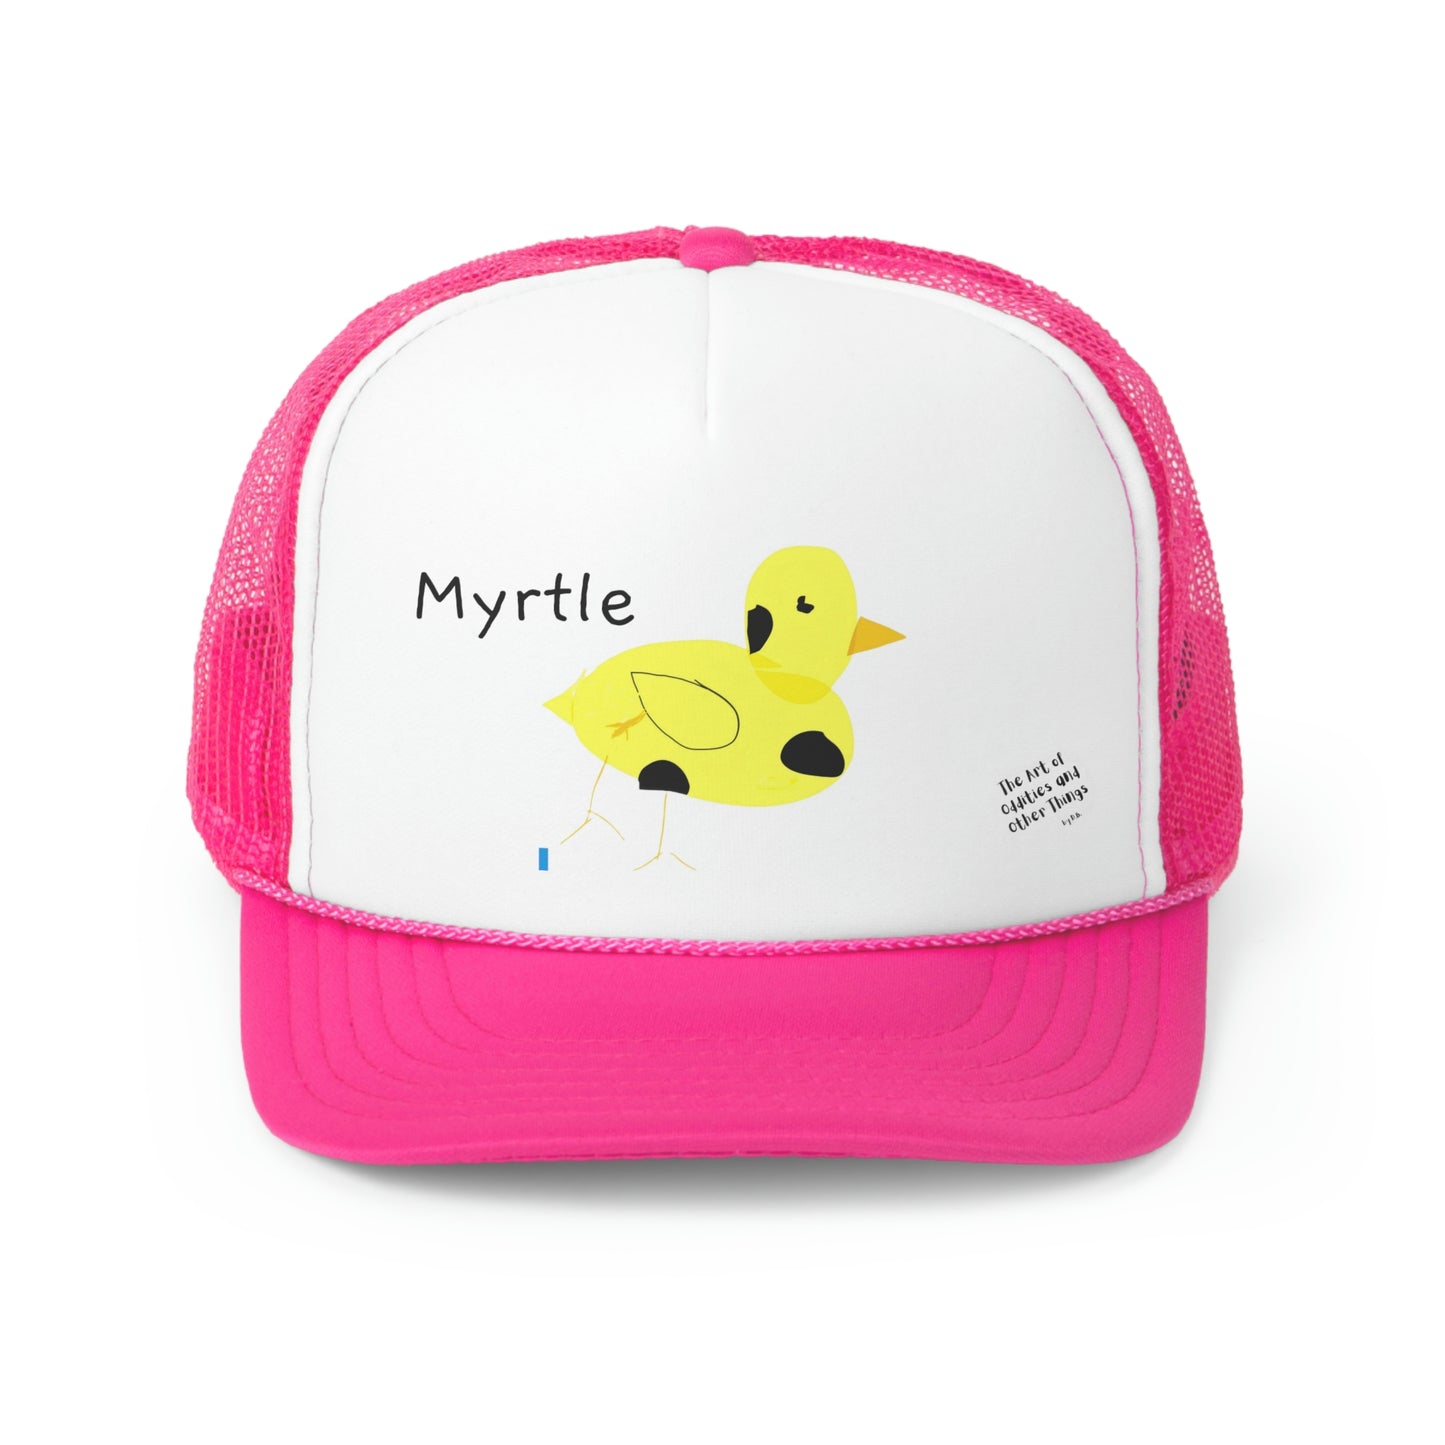 Myrtle the Four-Legged Chicken Trucker Caps